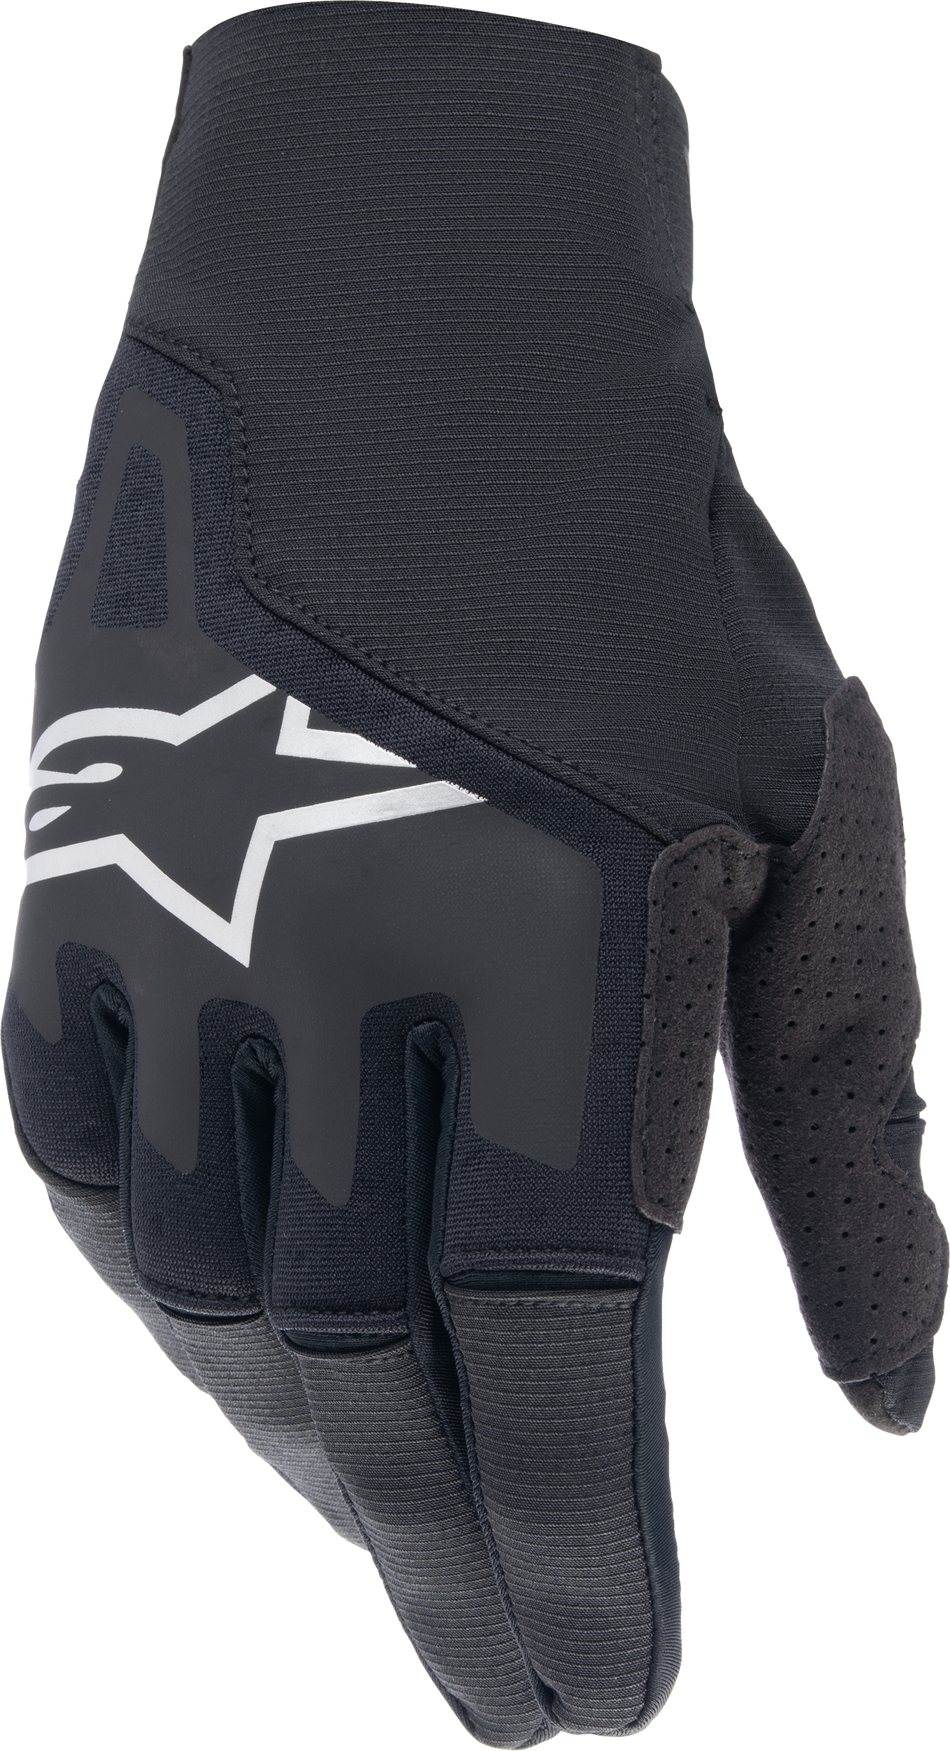 ALPINESTARS Techstar Gloves Black Lg 3561024-10-L